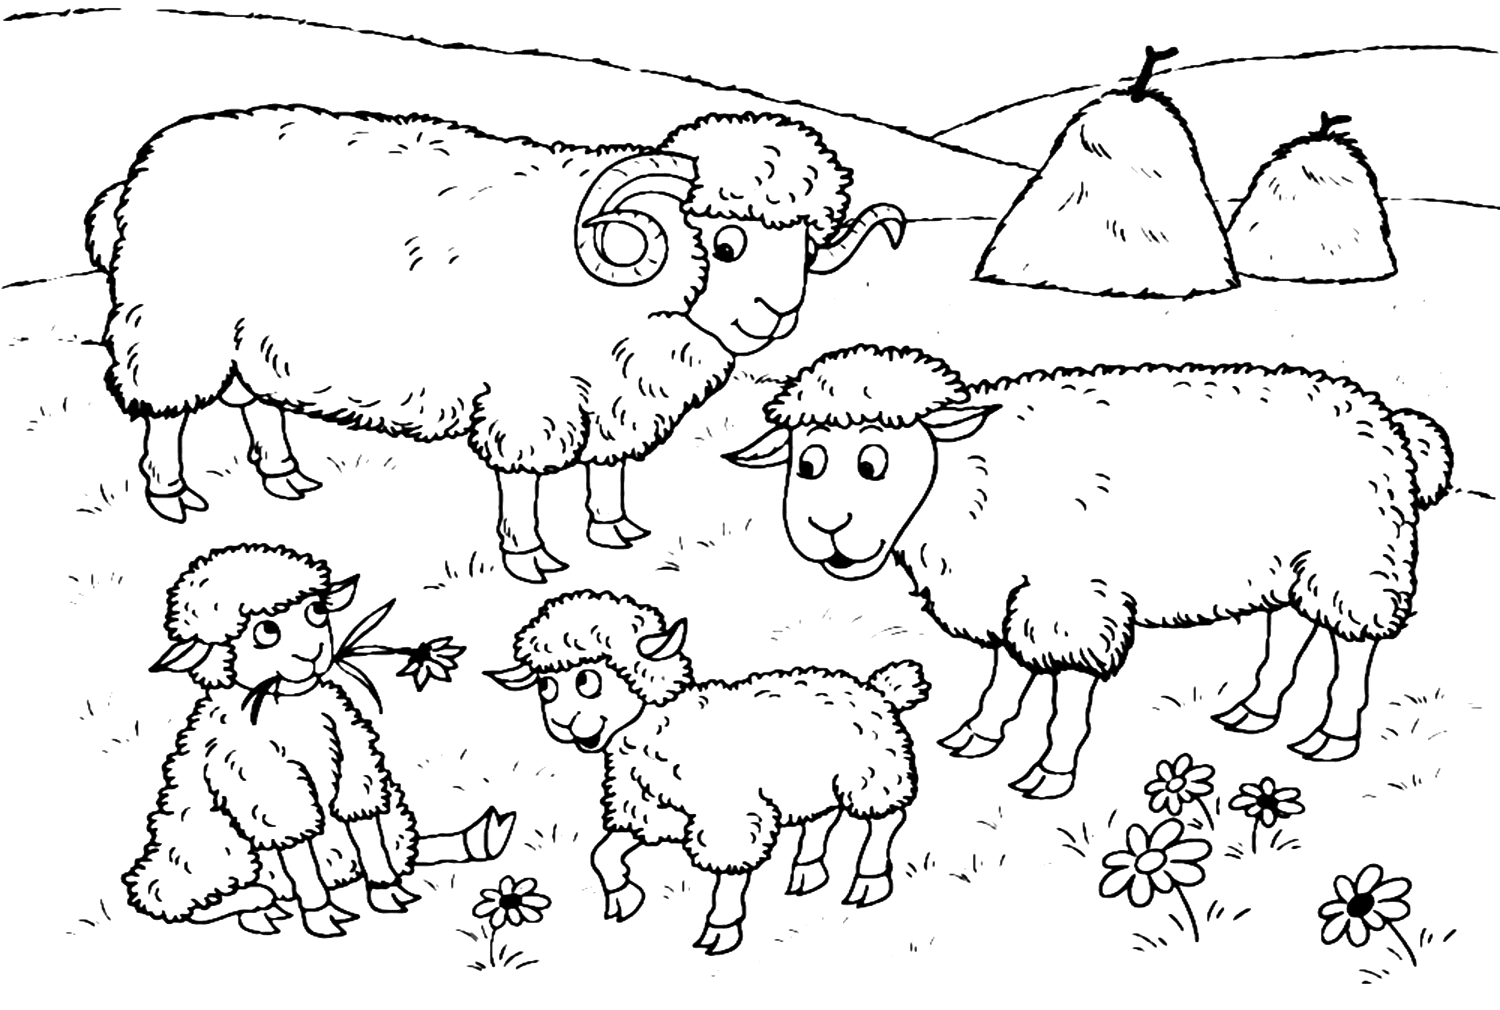 Agnello con famiglia di pecore from Lamb